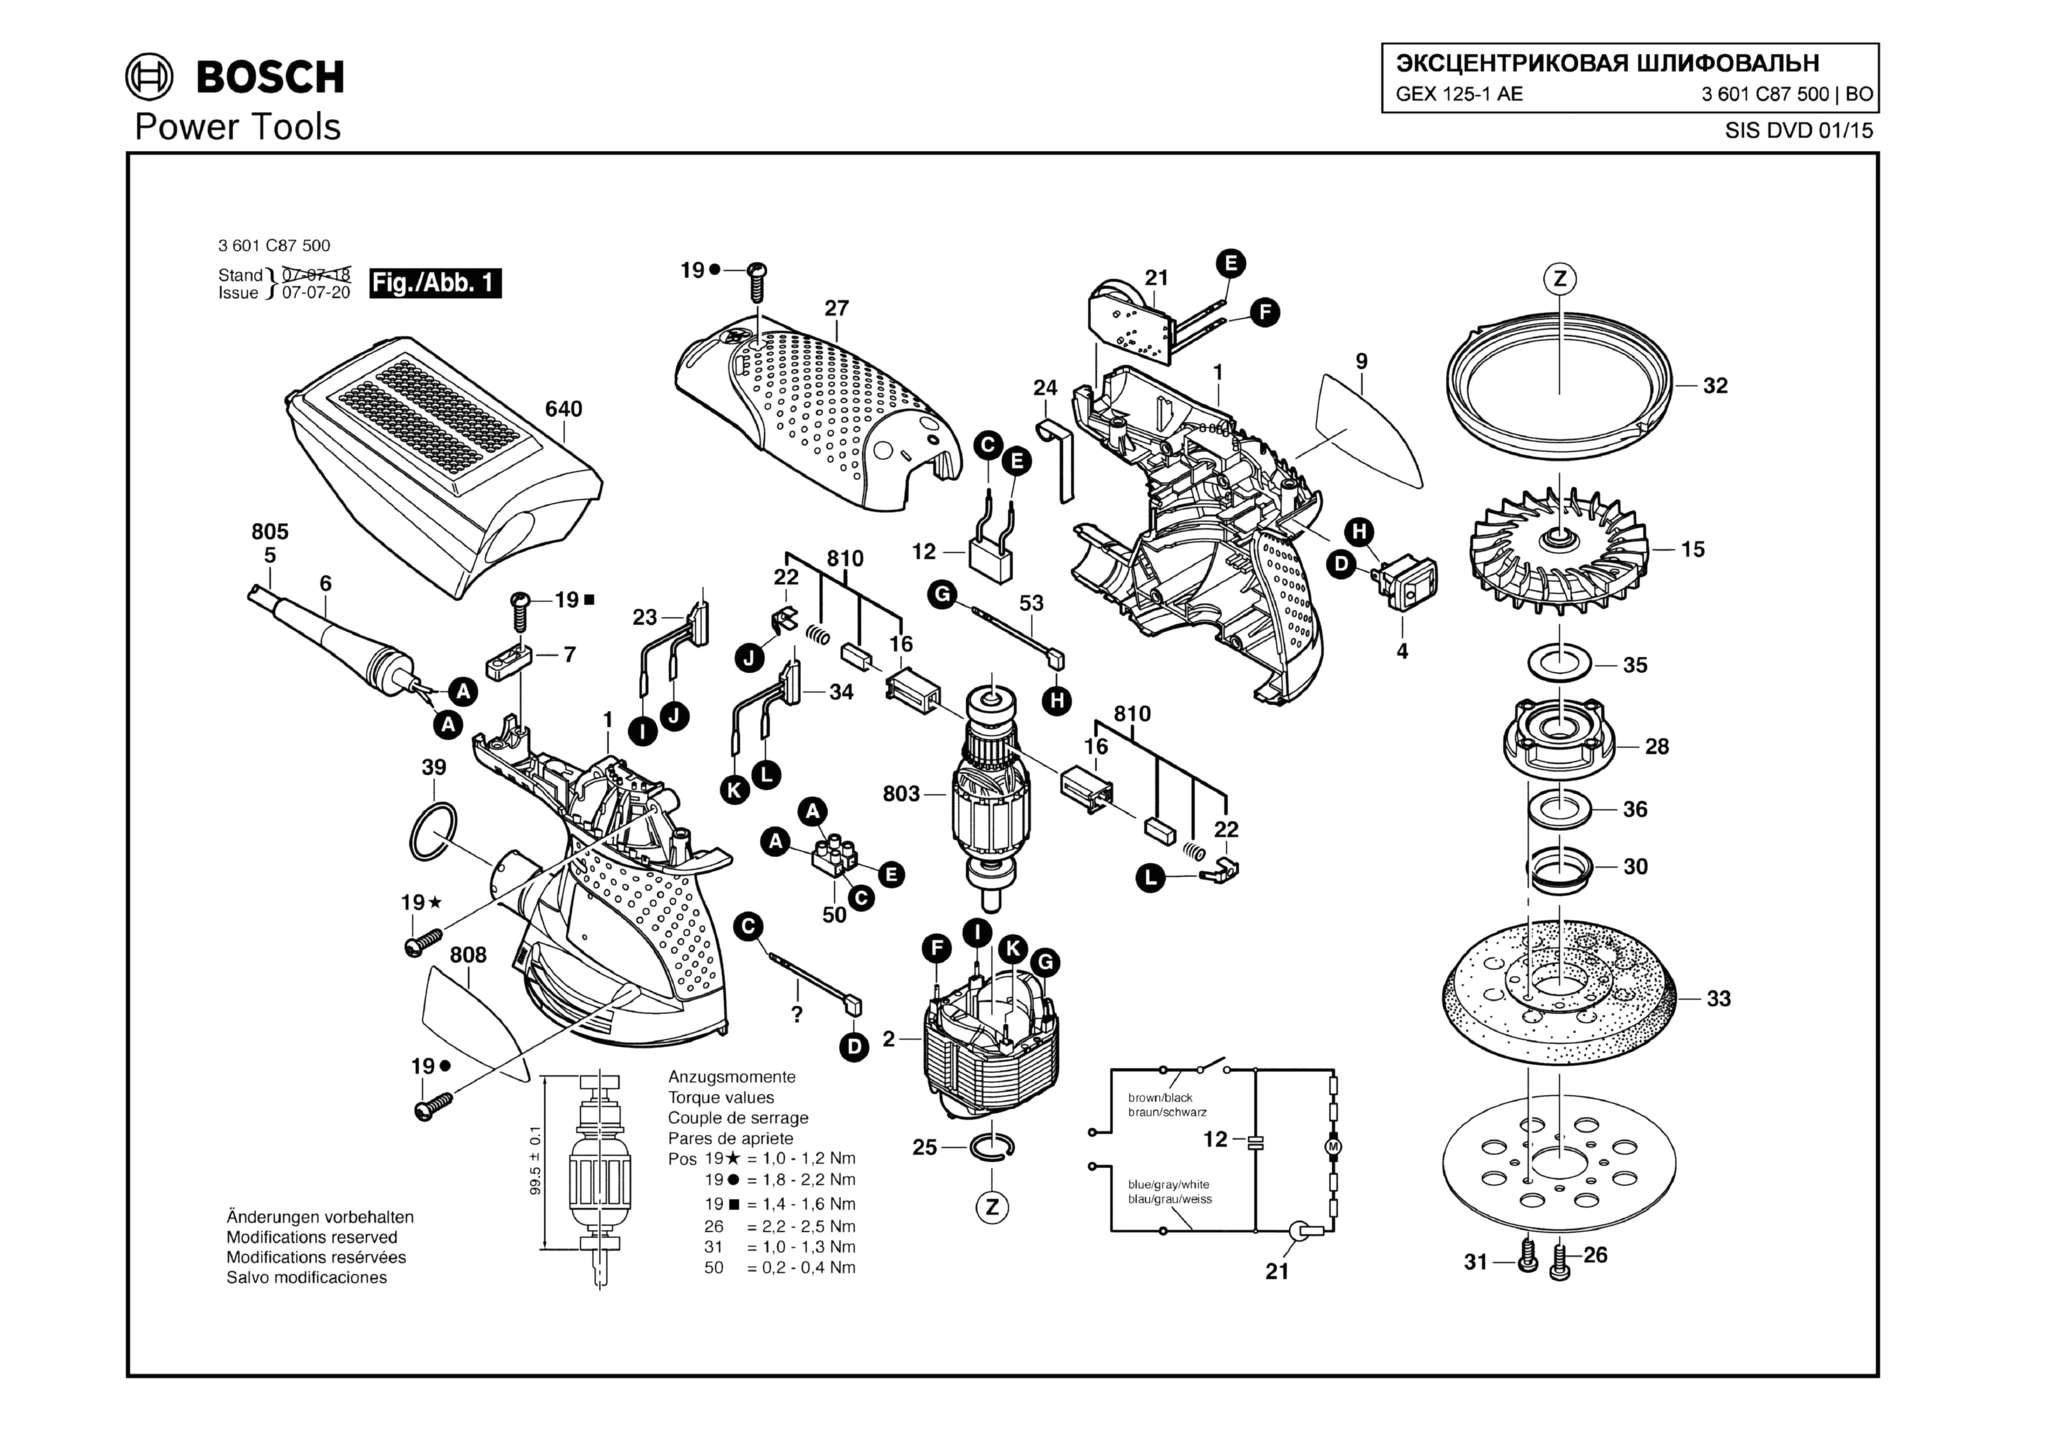 Запчасти, схема и деталировка Bosch GEX 125-1 AE (ТИП 3601C87500)